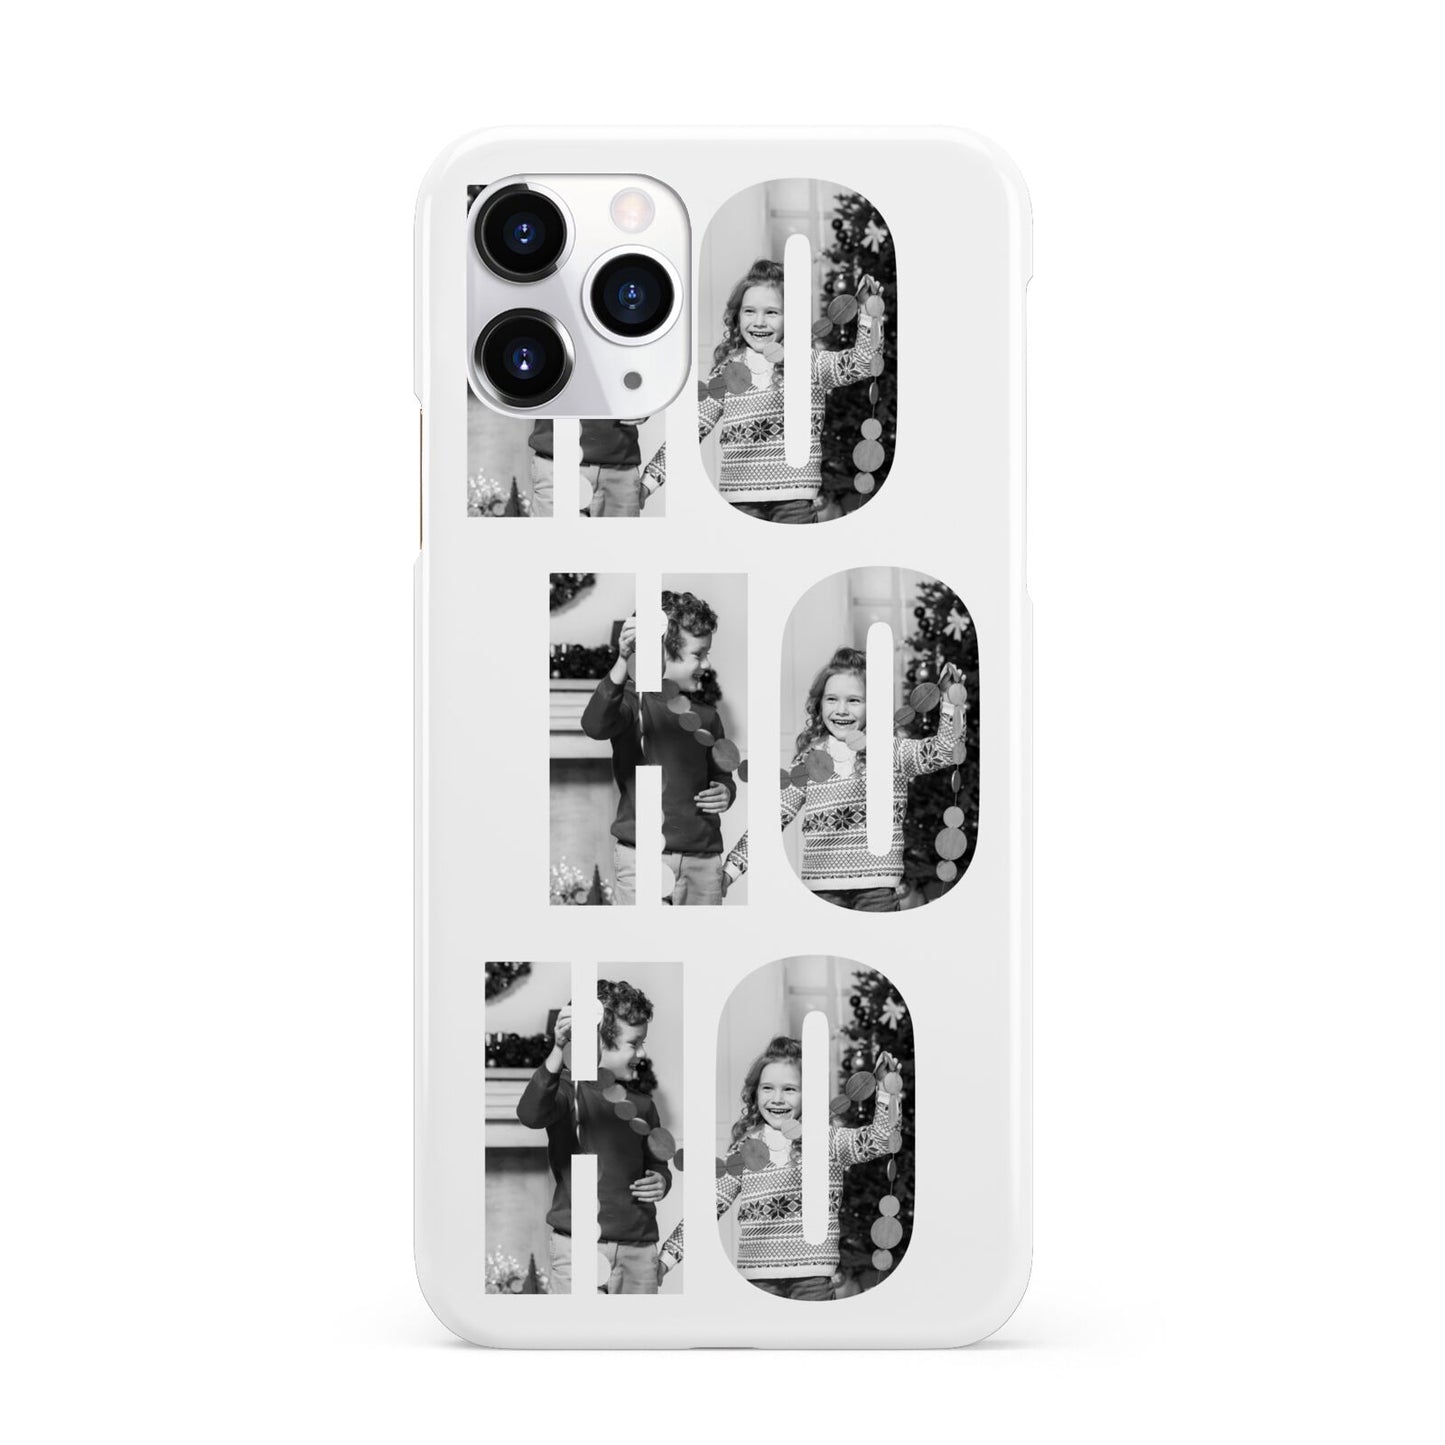 Ho Ho Ho Photo Upload Christmas iPhone 11 Pro 3D Snap Case